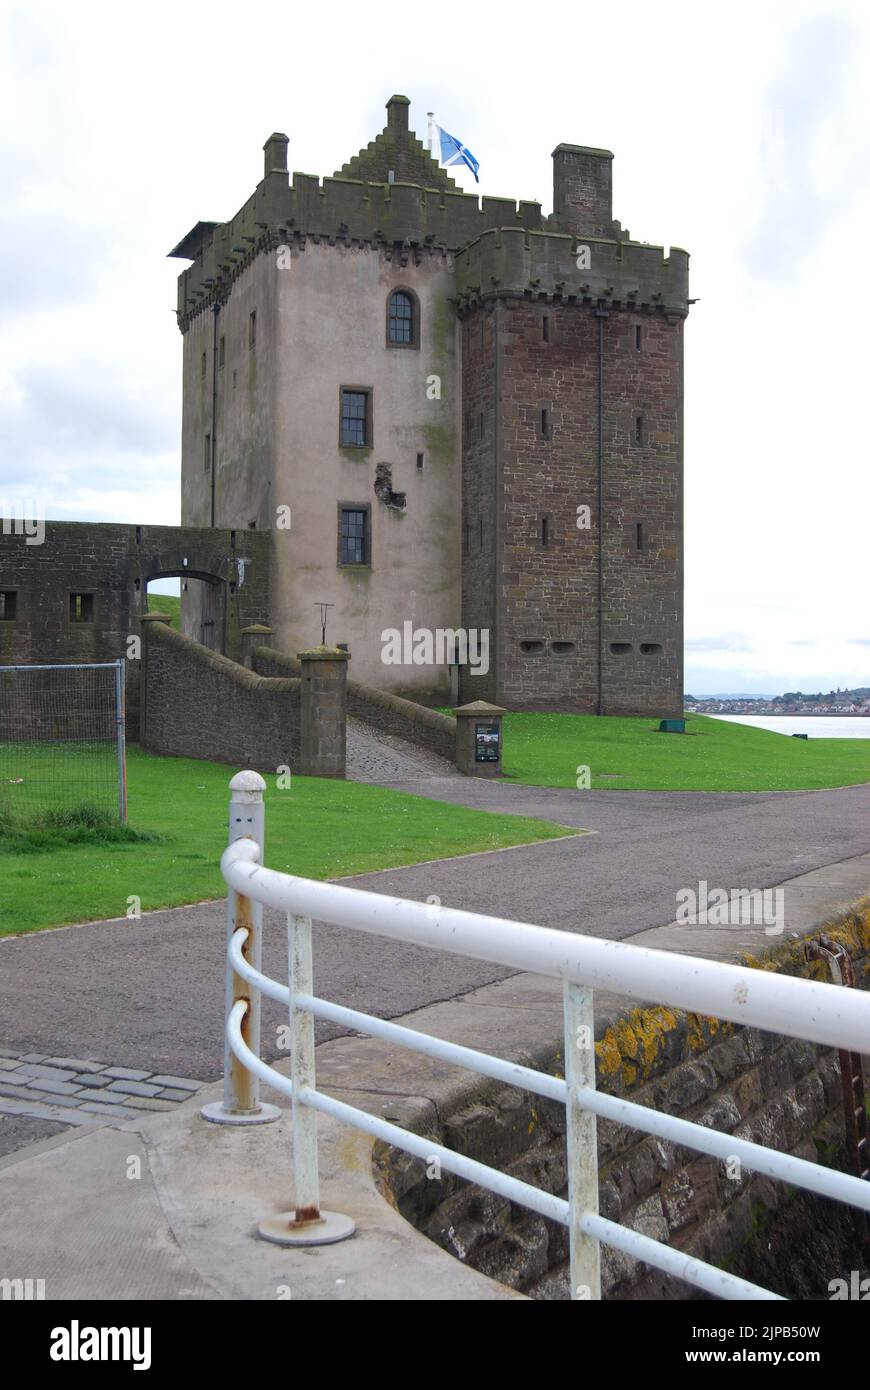 Le château de Broughty, avec ses balustrades blanches en premier plan et son drapeau en forme de saltire, se trouve à l'embouchure de l'estuaire de la Tay, à Broughty Ferry, près de Dundee. Banque D'Images